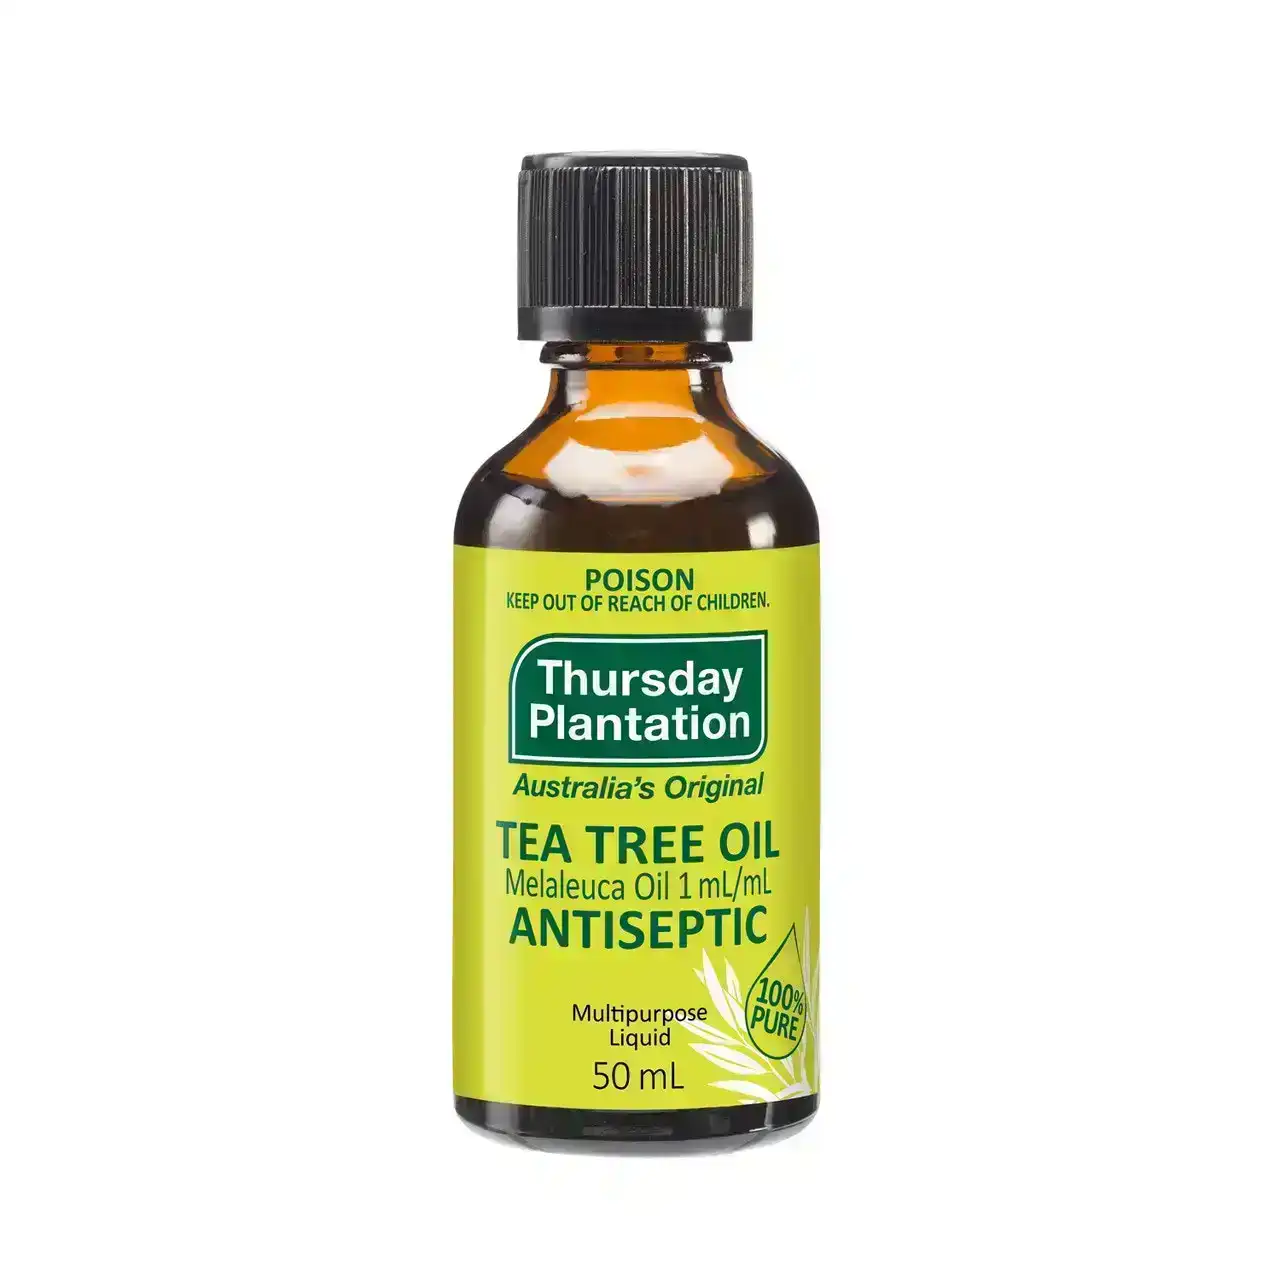 Thursday Plantation Tea Tree Oil Antiseptic Multipurpose Liquid 50mL